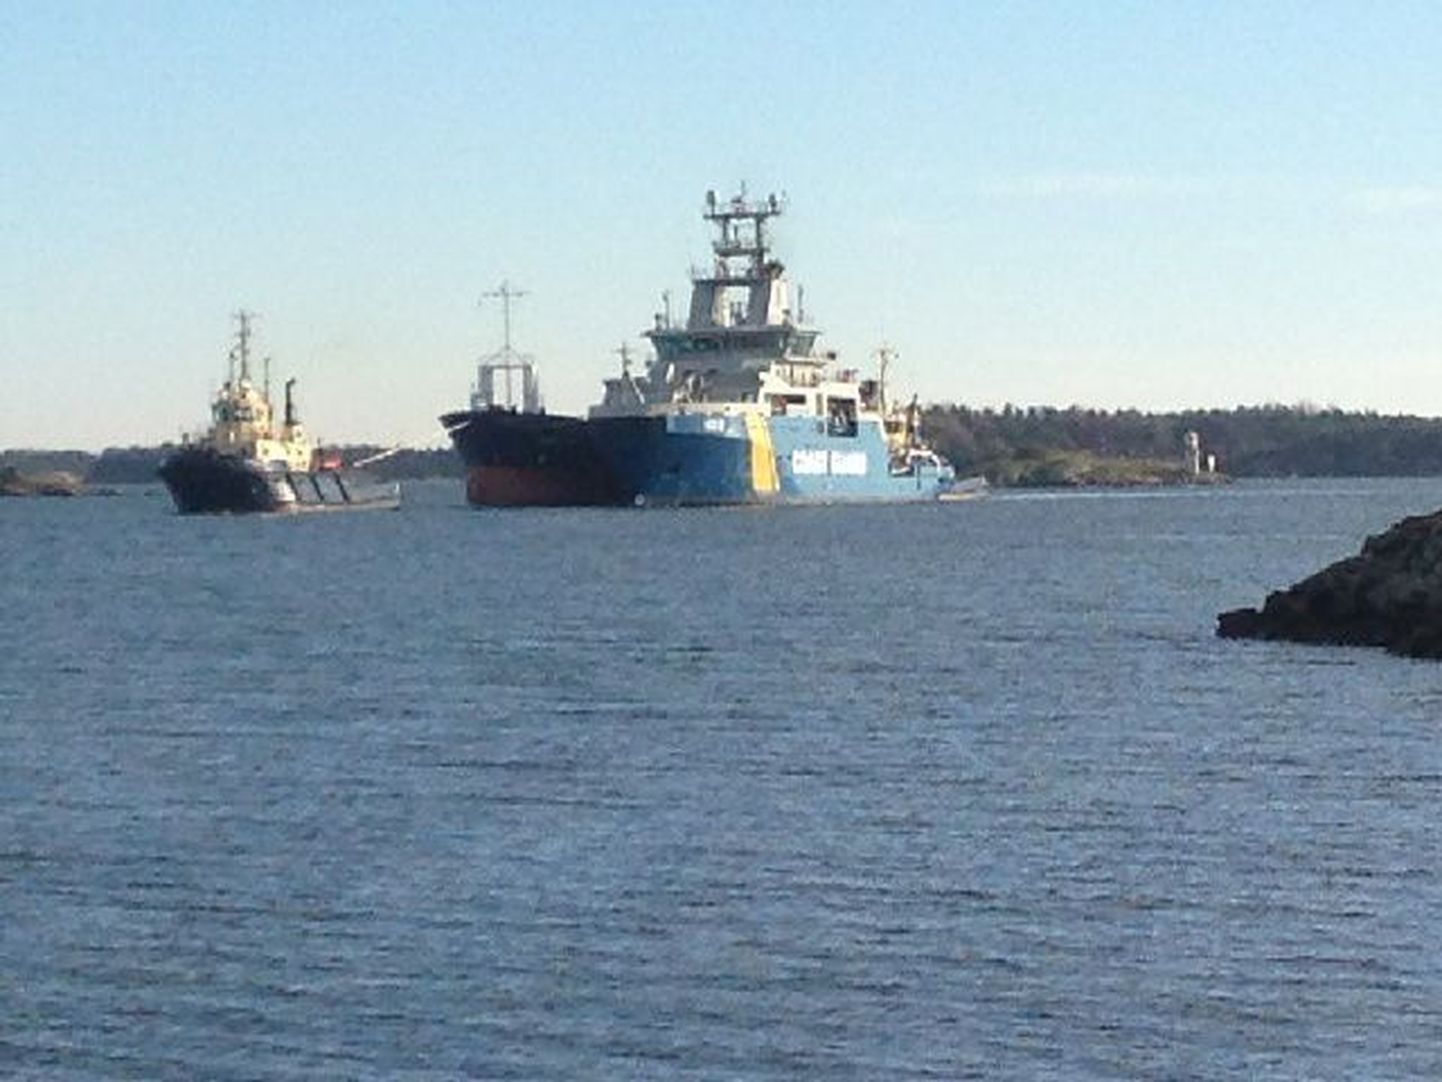 Eesti kaubalaev Kertu jõudis täna pärastlõunal Rootsi Oxelösundi sadamasse.